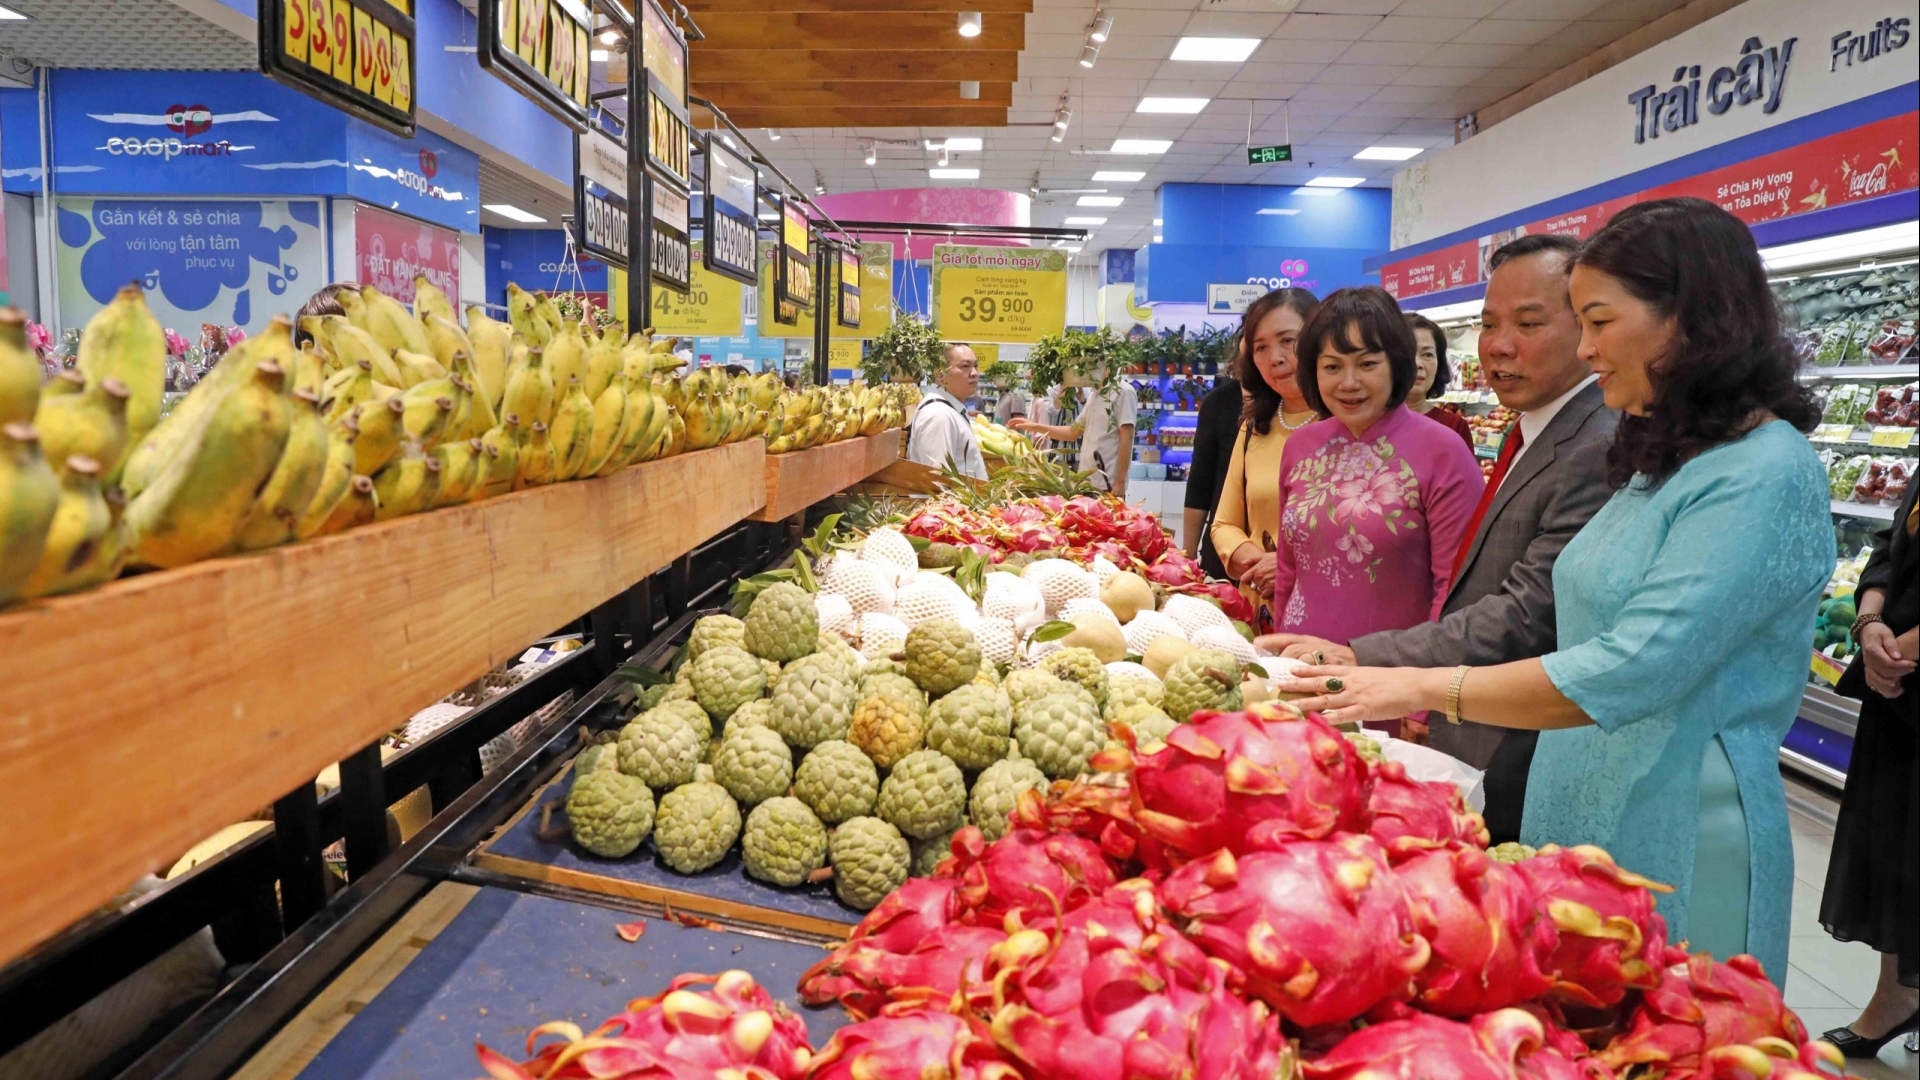 自豪越南货—越南货精华的越南商品周正式启动